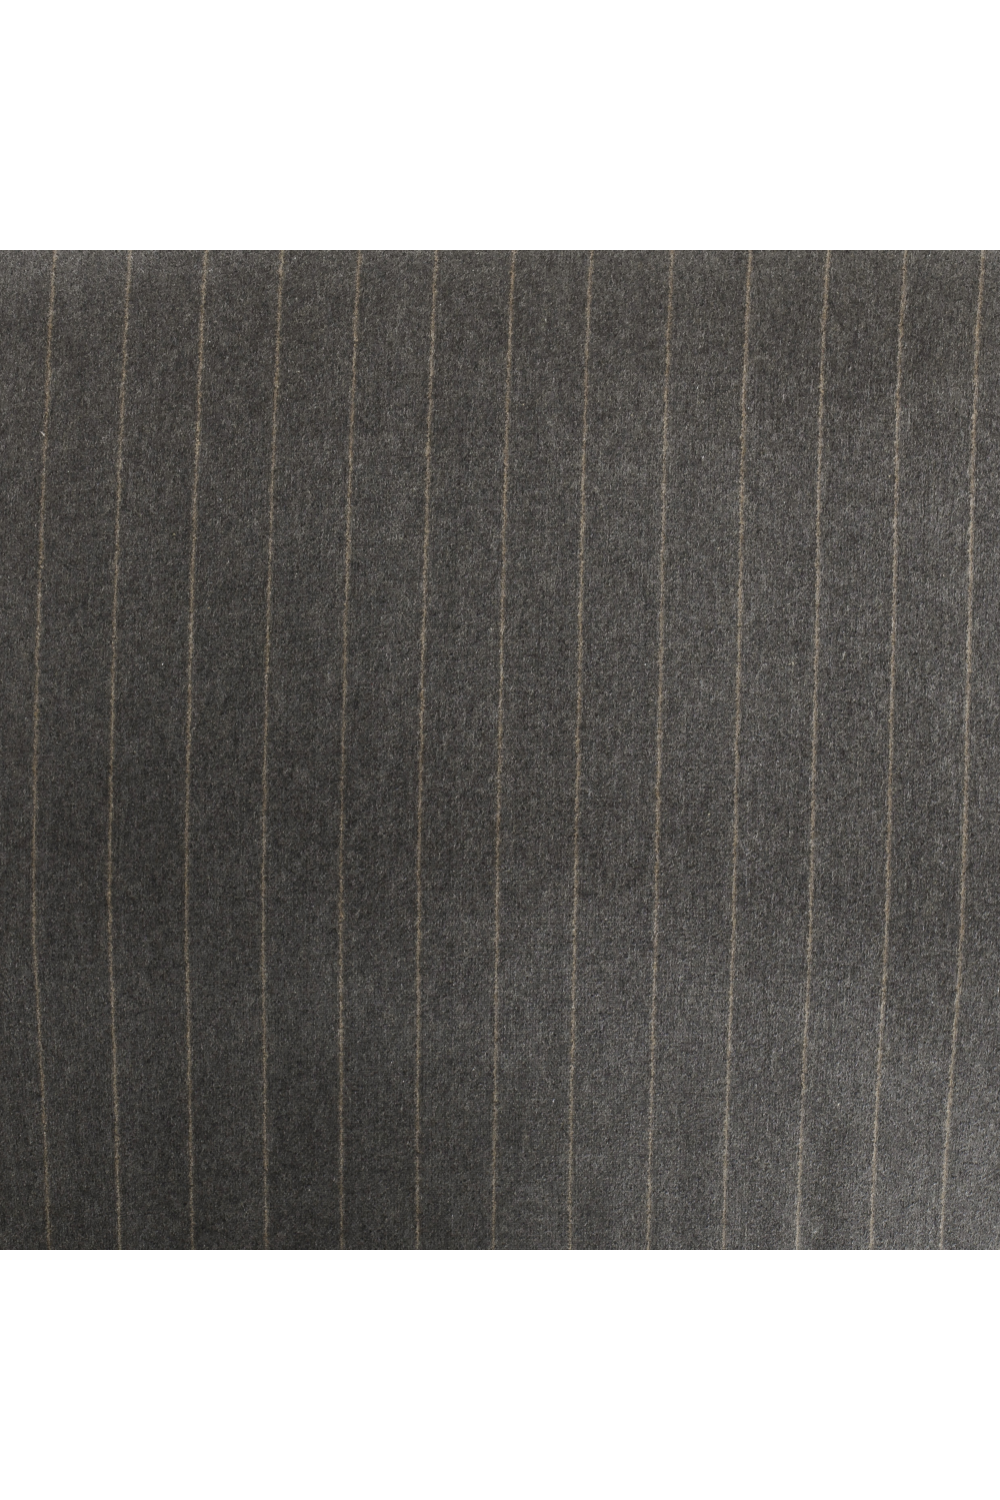 Dark Gray Upholstered Swivel Chair | Andrew Martin Fraser | OROA